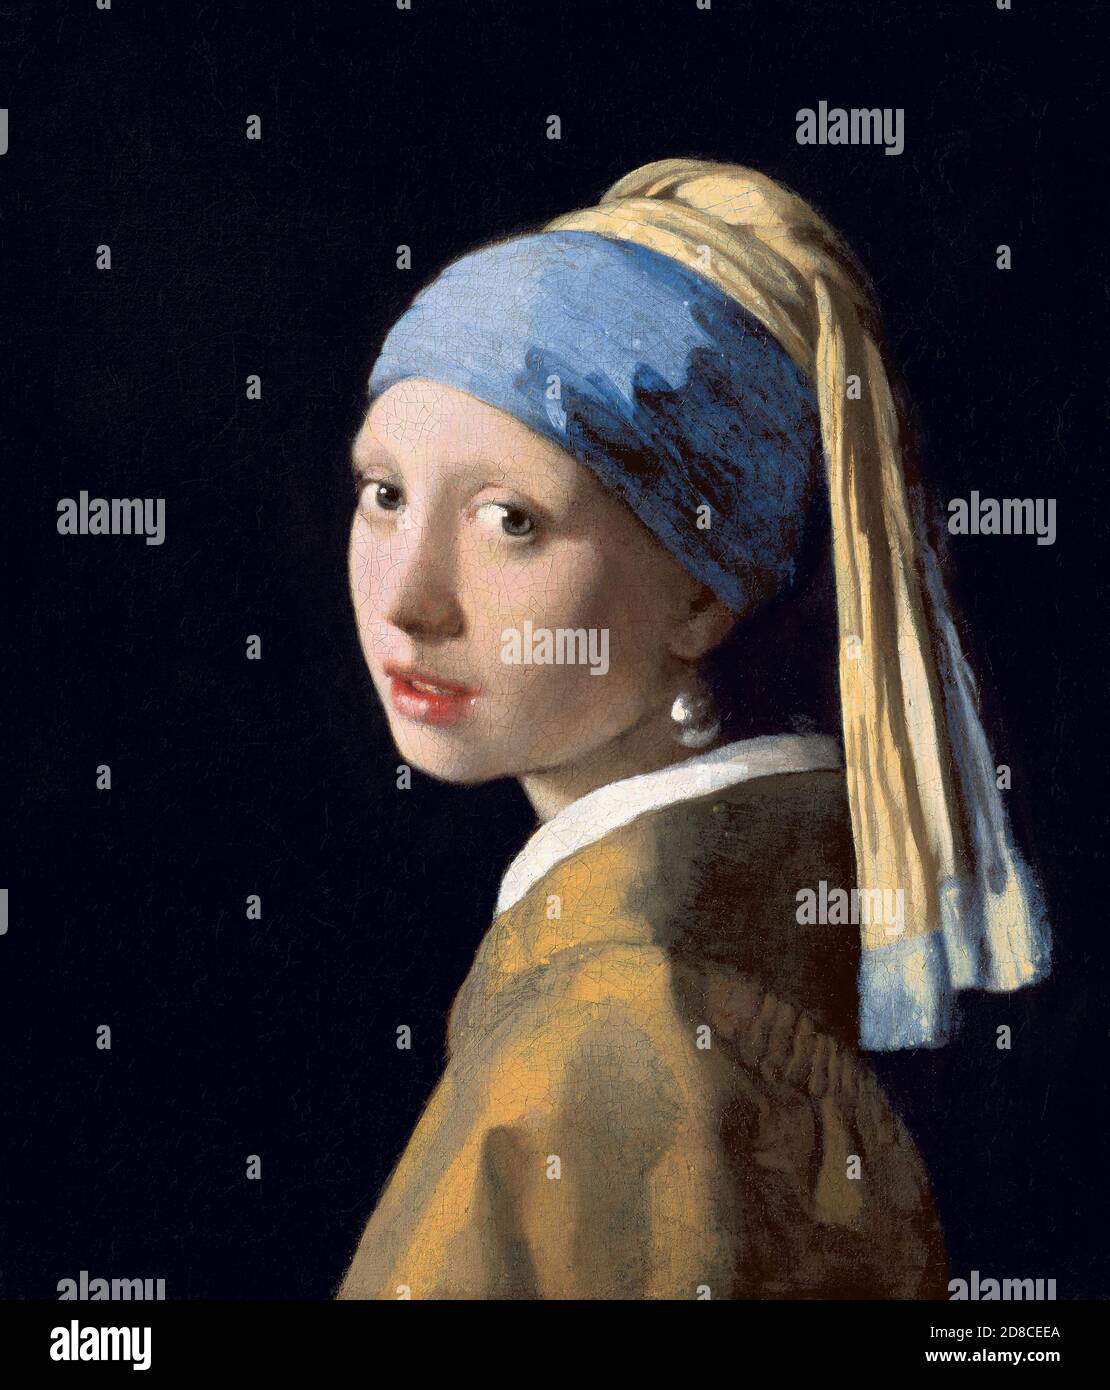 Titel: Mädchen mit Perlenohrring Ersteller: Johannes Vermeer Datum: ca. 1665-6 Medium: Öl auf Leinwand Maße: 44.5 x 39 cm Ort: Mauritshuis, Den Haag Stockfoto